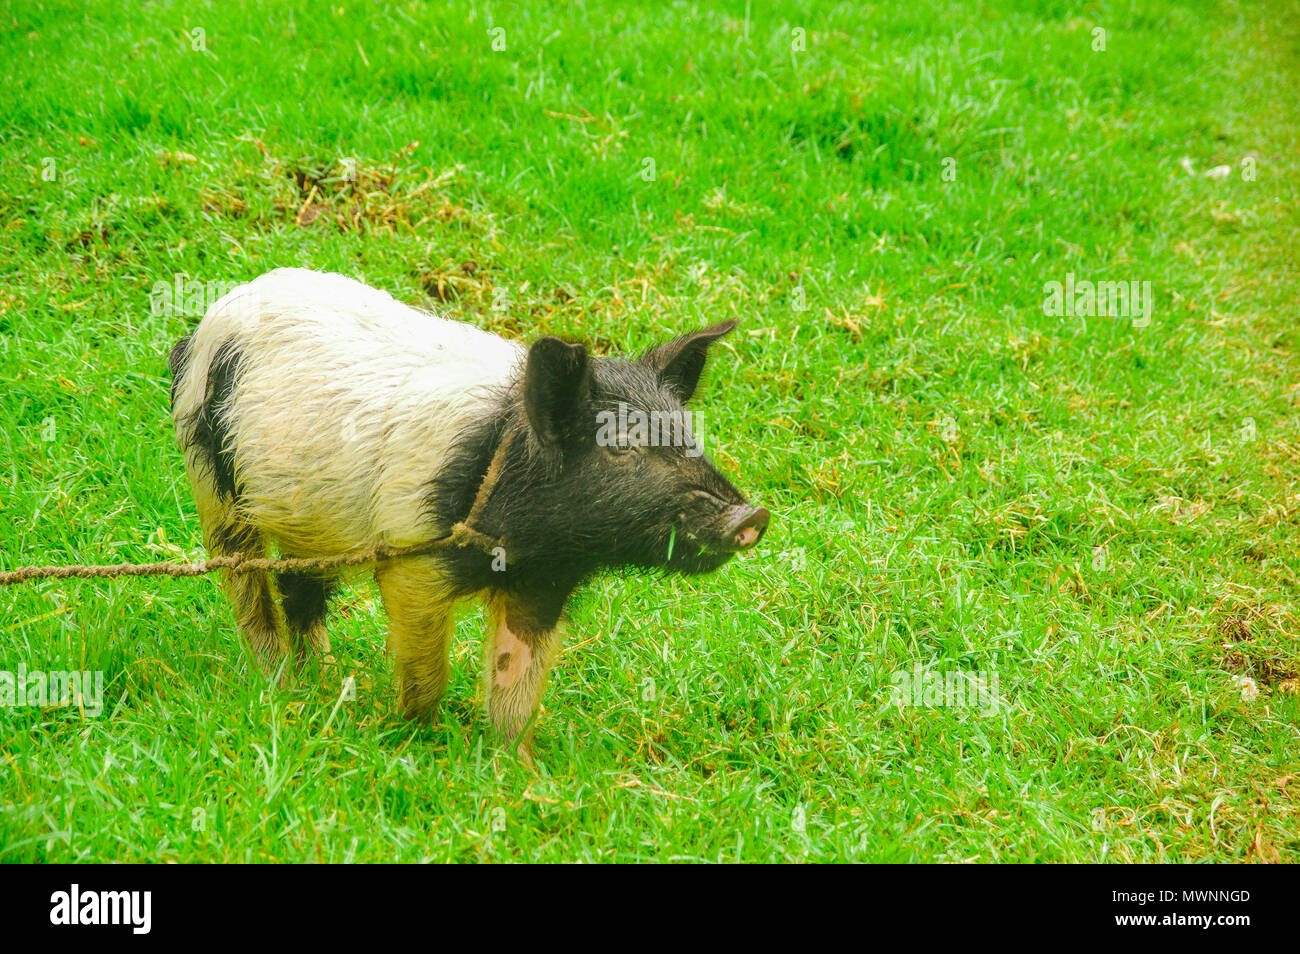 Im freien Blick auf Schwein mit einem Seil um den Hals Beweidung im Gras Stockfoto